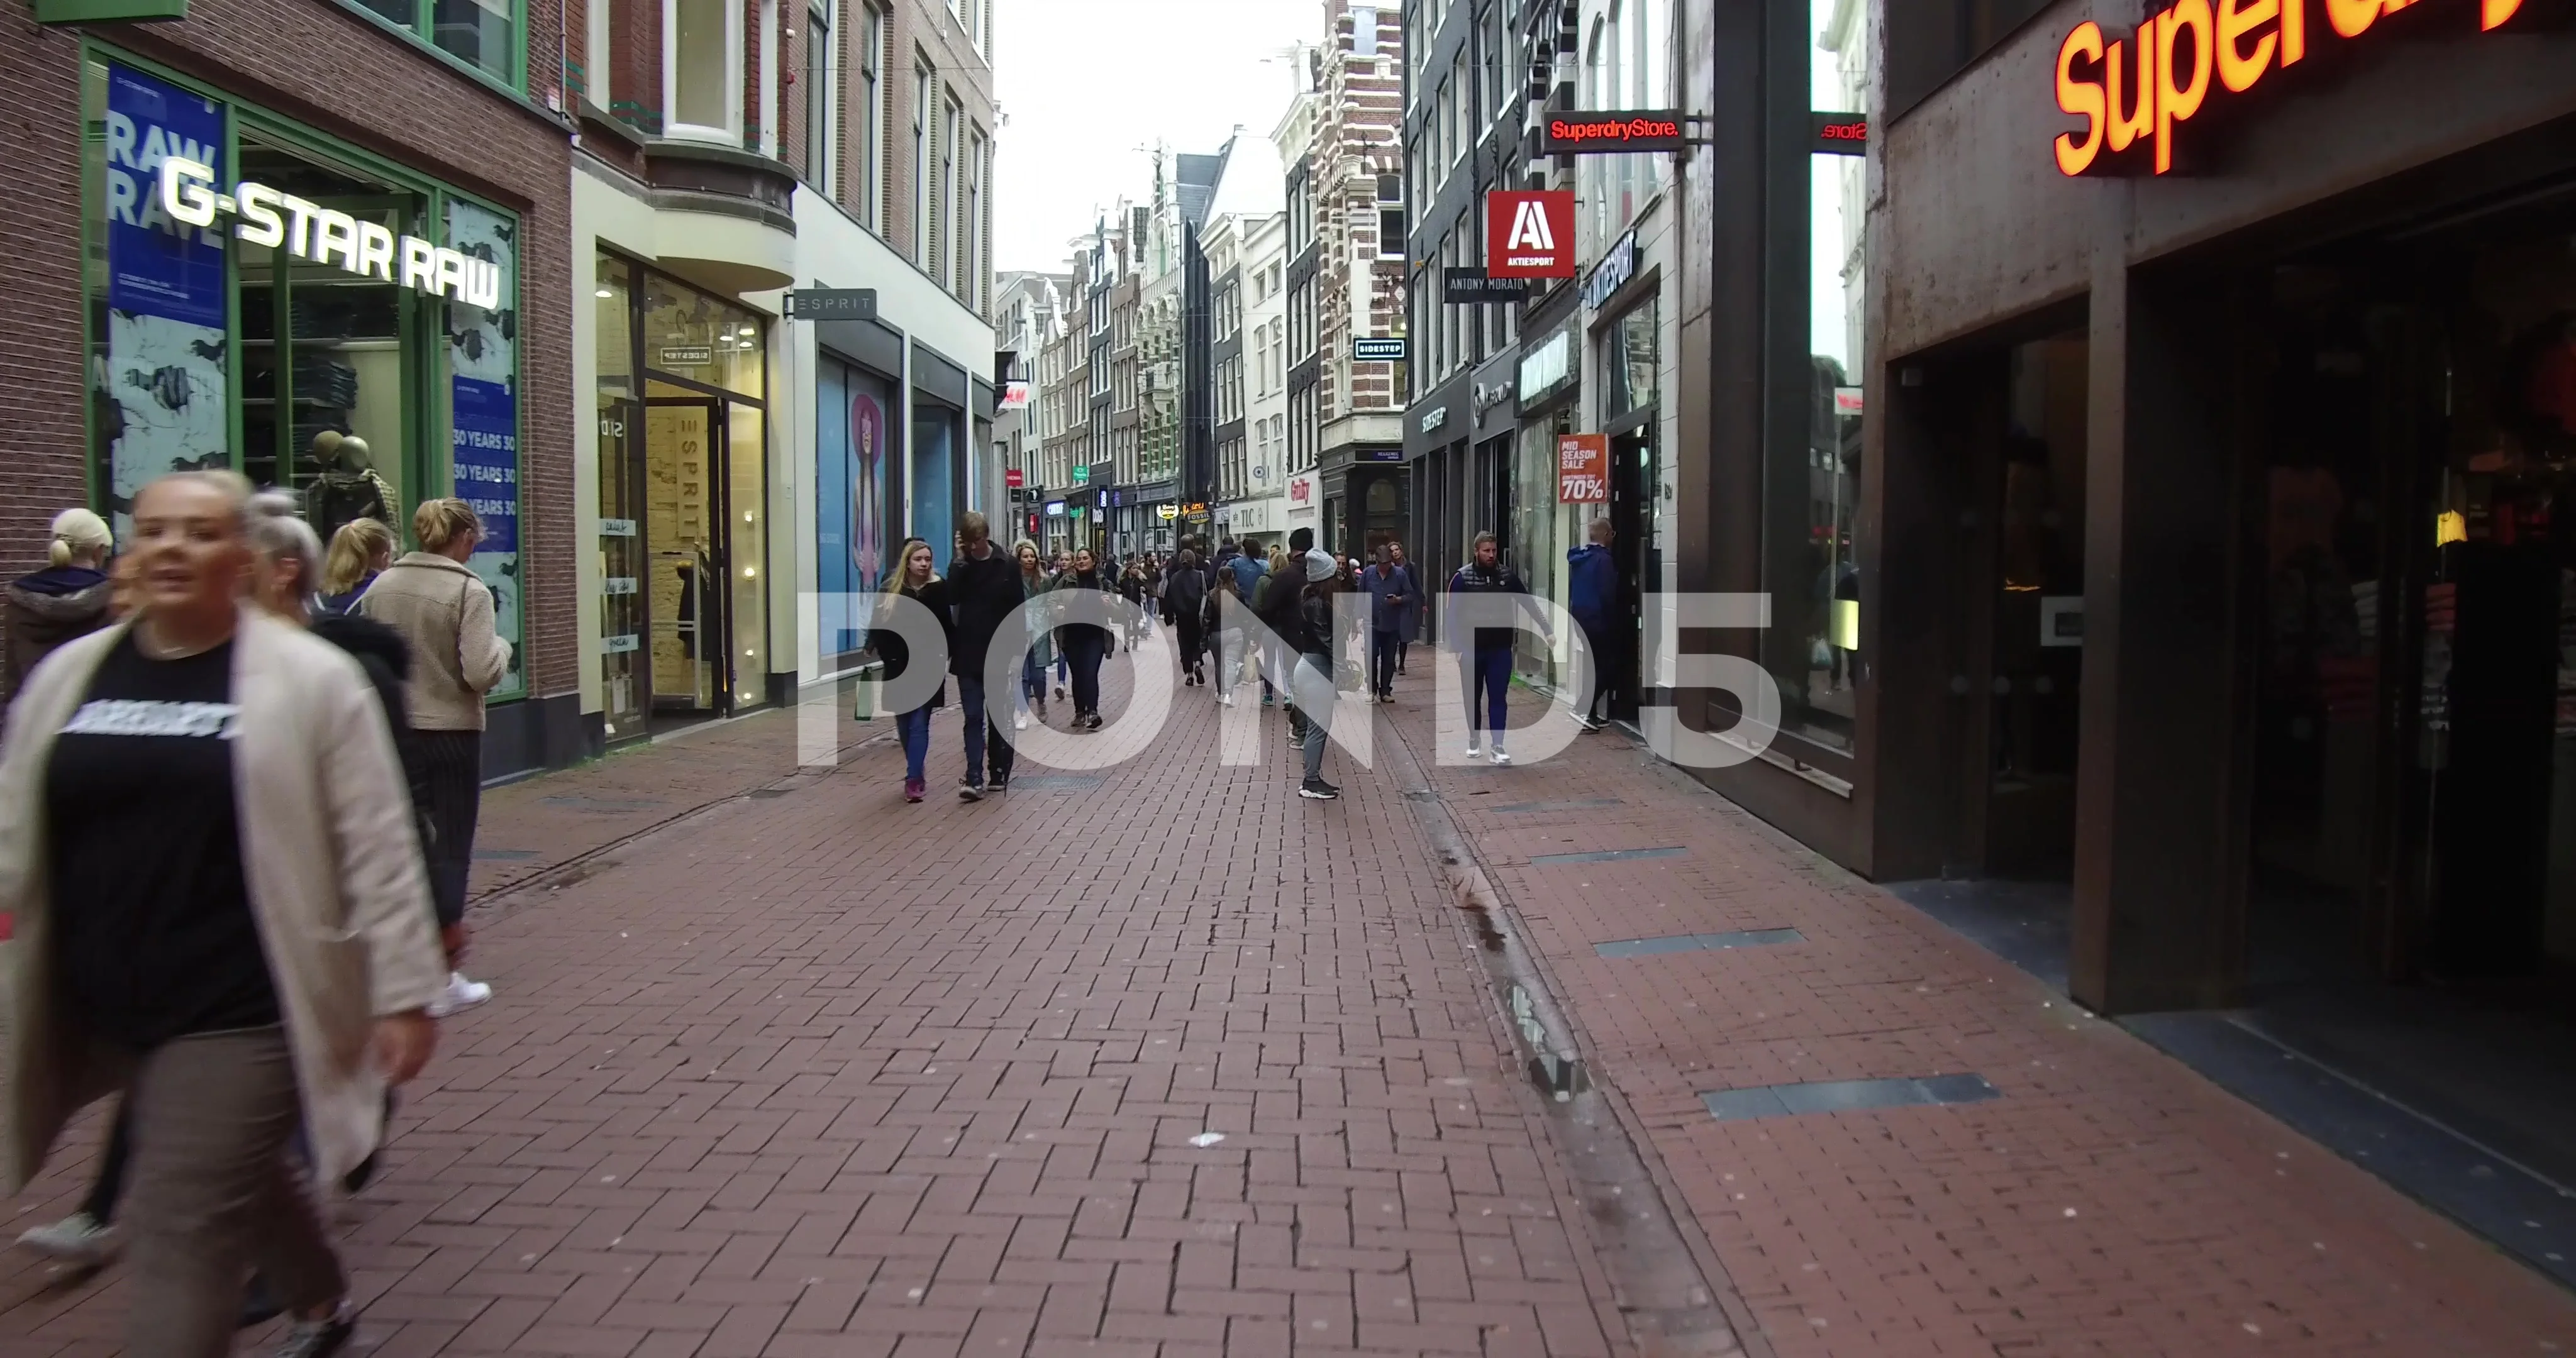 menigte binnenkort viering Kalverstraat Stock Footage ~ Royalty Free Stock Videos | Pond5